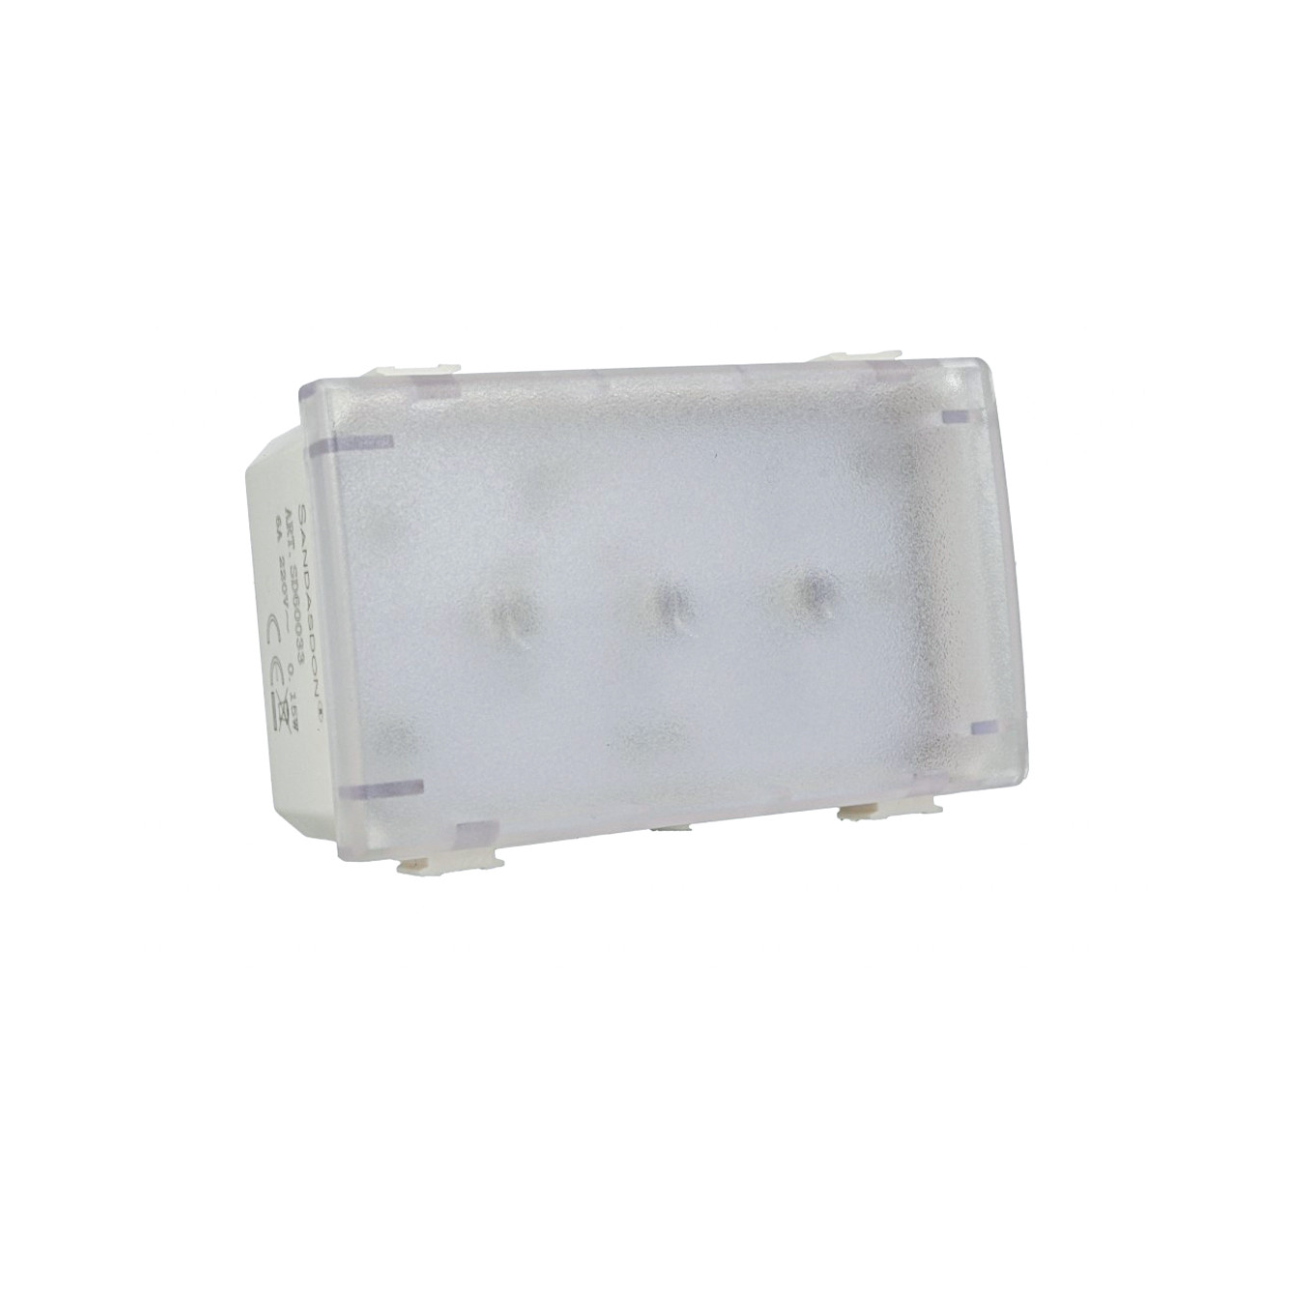 Lampada emergenza compatibile con Bticino Matix per scatola 503 luce led 3w  3 moduli da incasso a parete